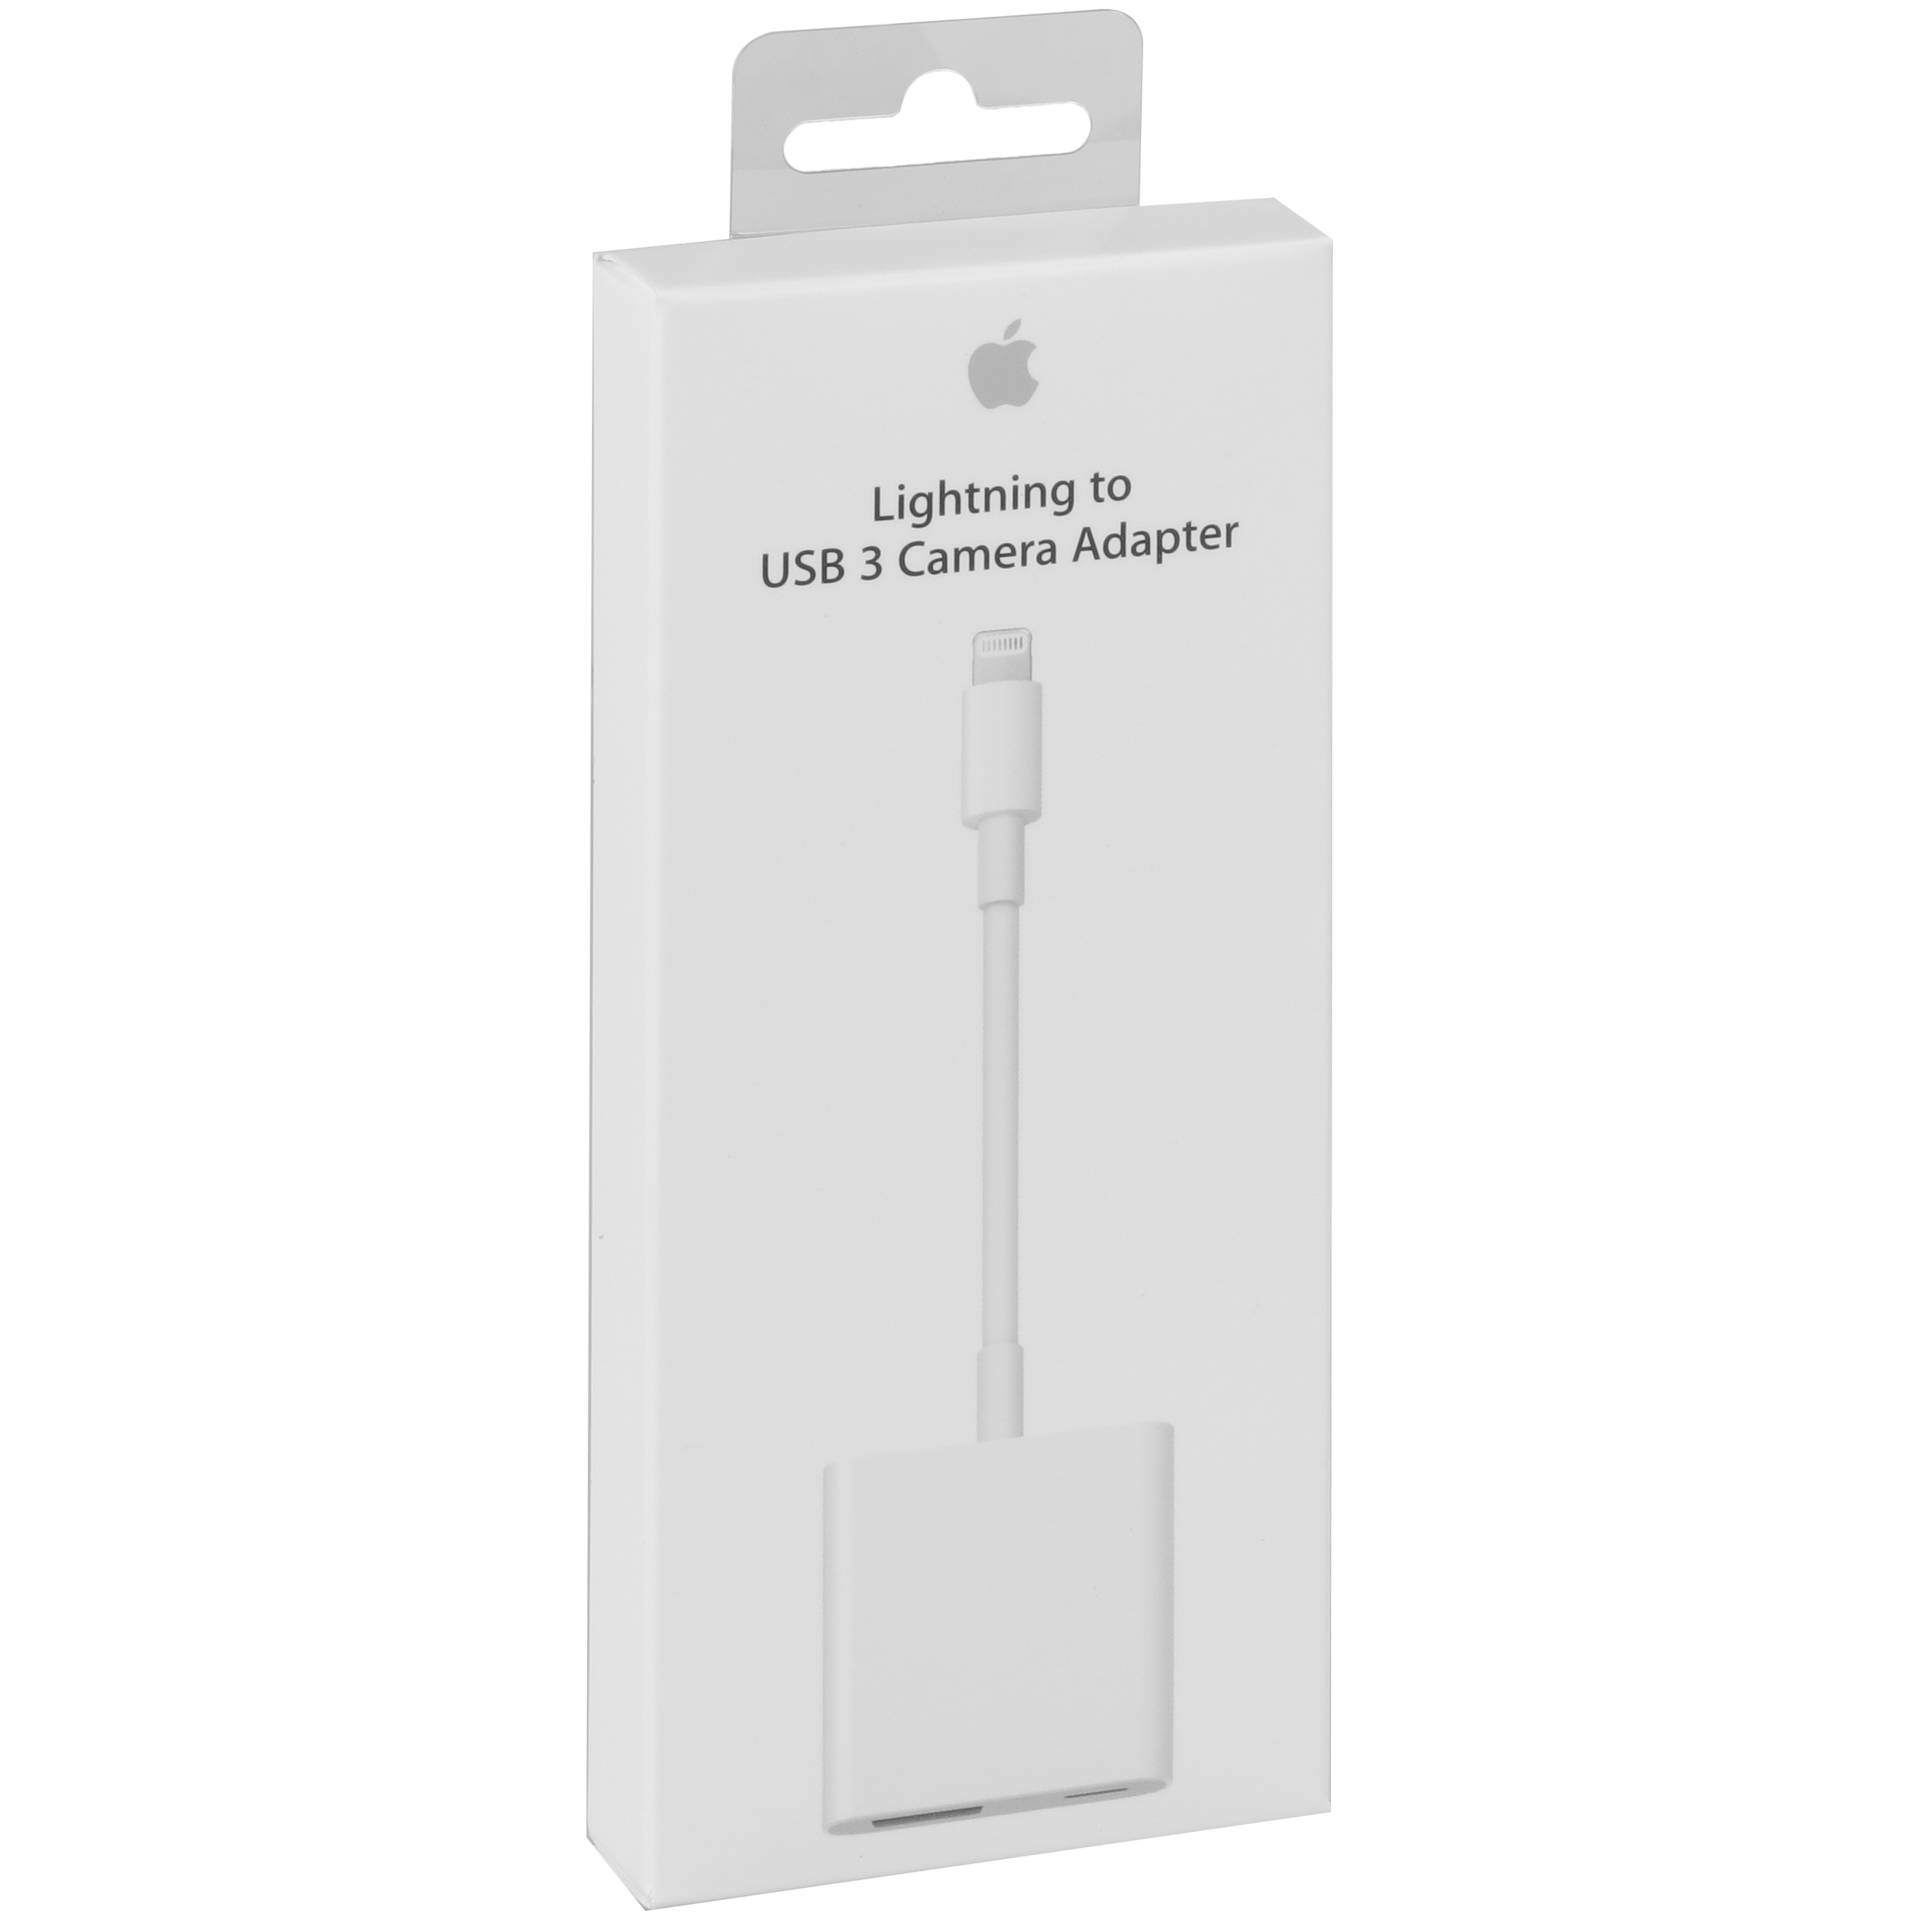 Адаптер apple lightning usb. Адаптер переходник Apple Lightning to USB. Переходник Apple Lightning USB 3.0. Адаптер Lightning/USB 3 для подключения камеры (mk0w2zm/a). Apple Lightning USB адаптер для камеры.